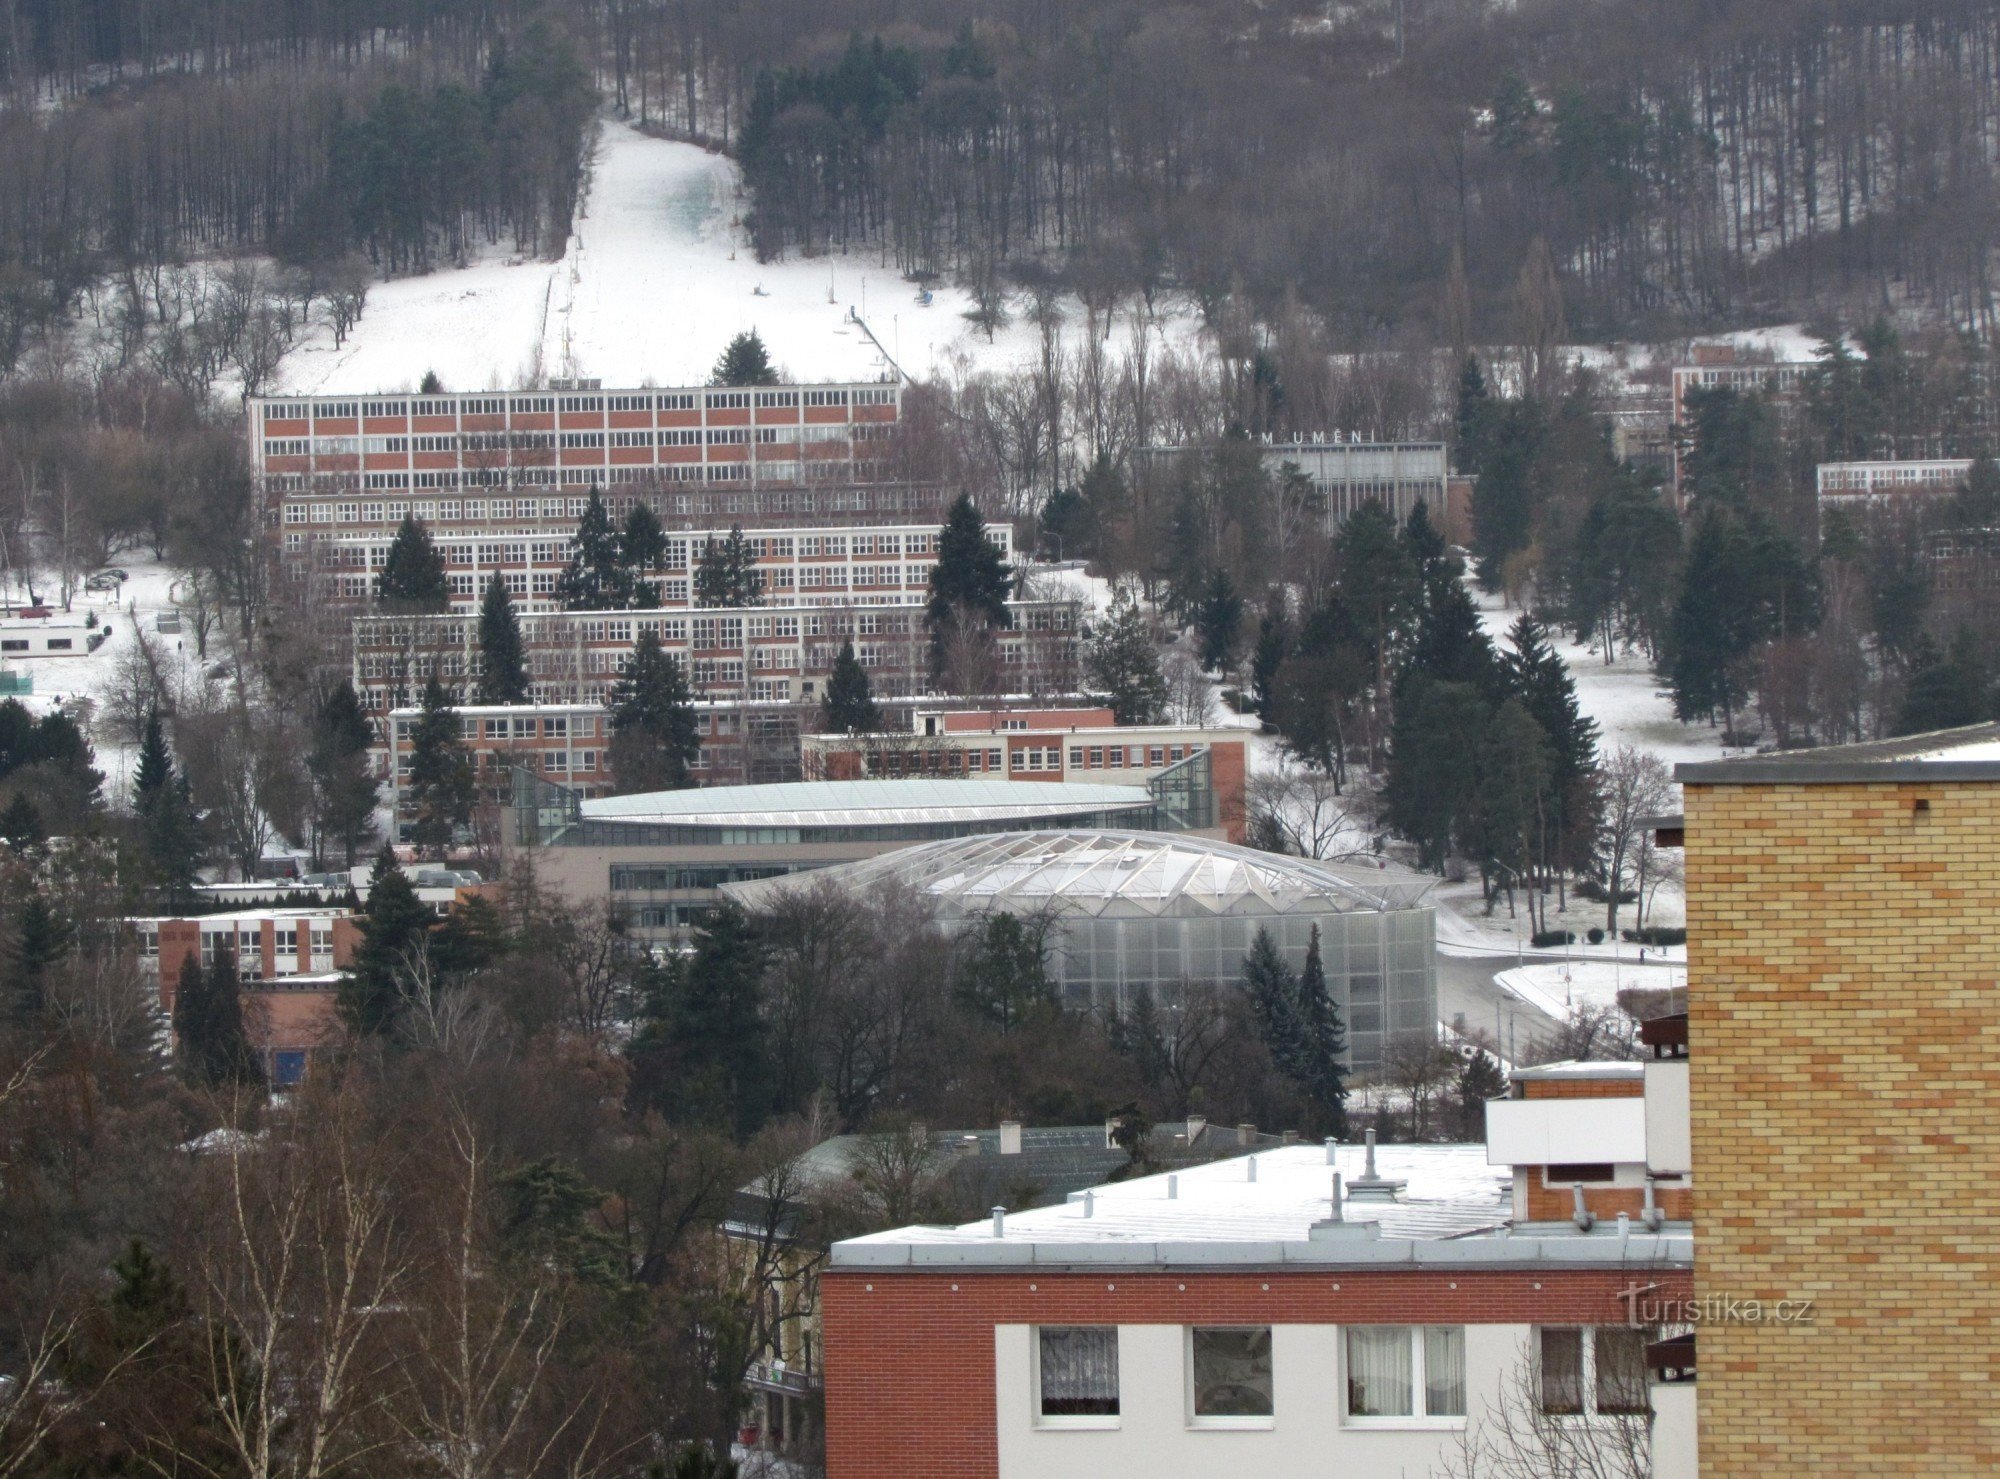 Ski slope in Zlín